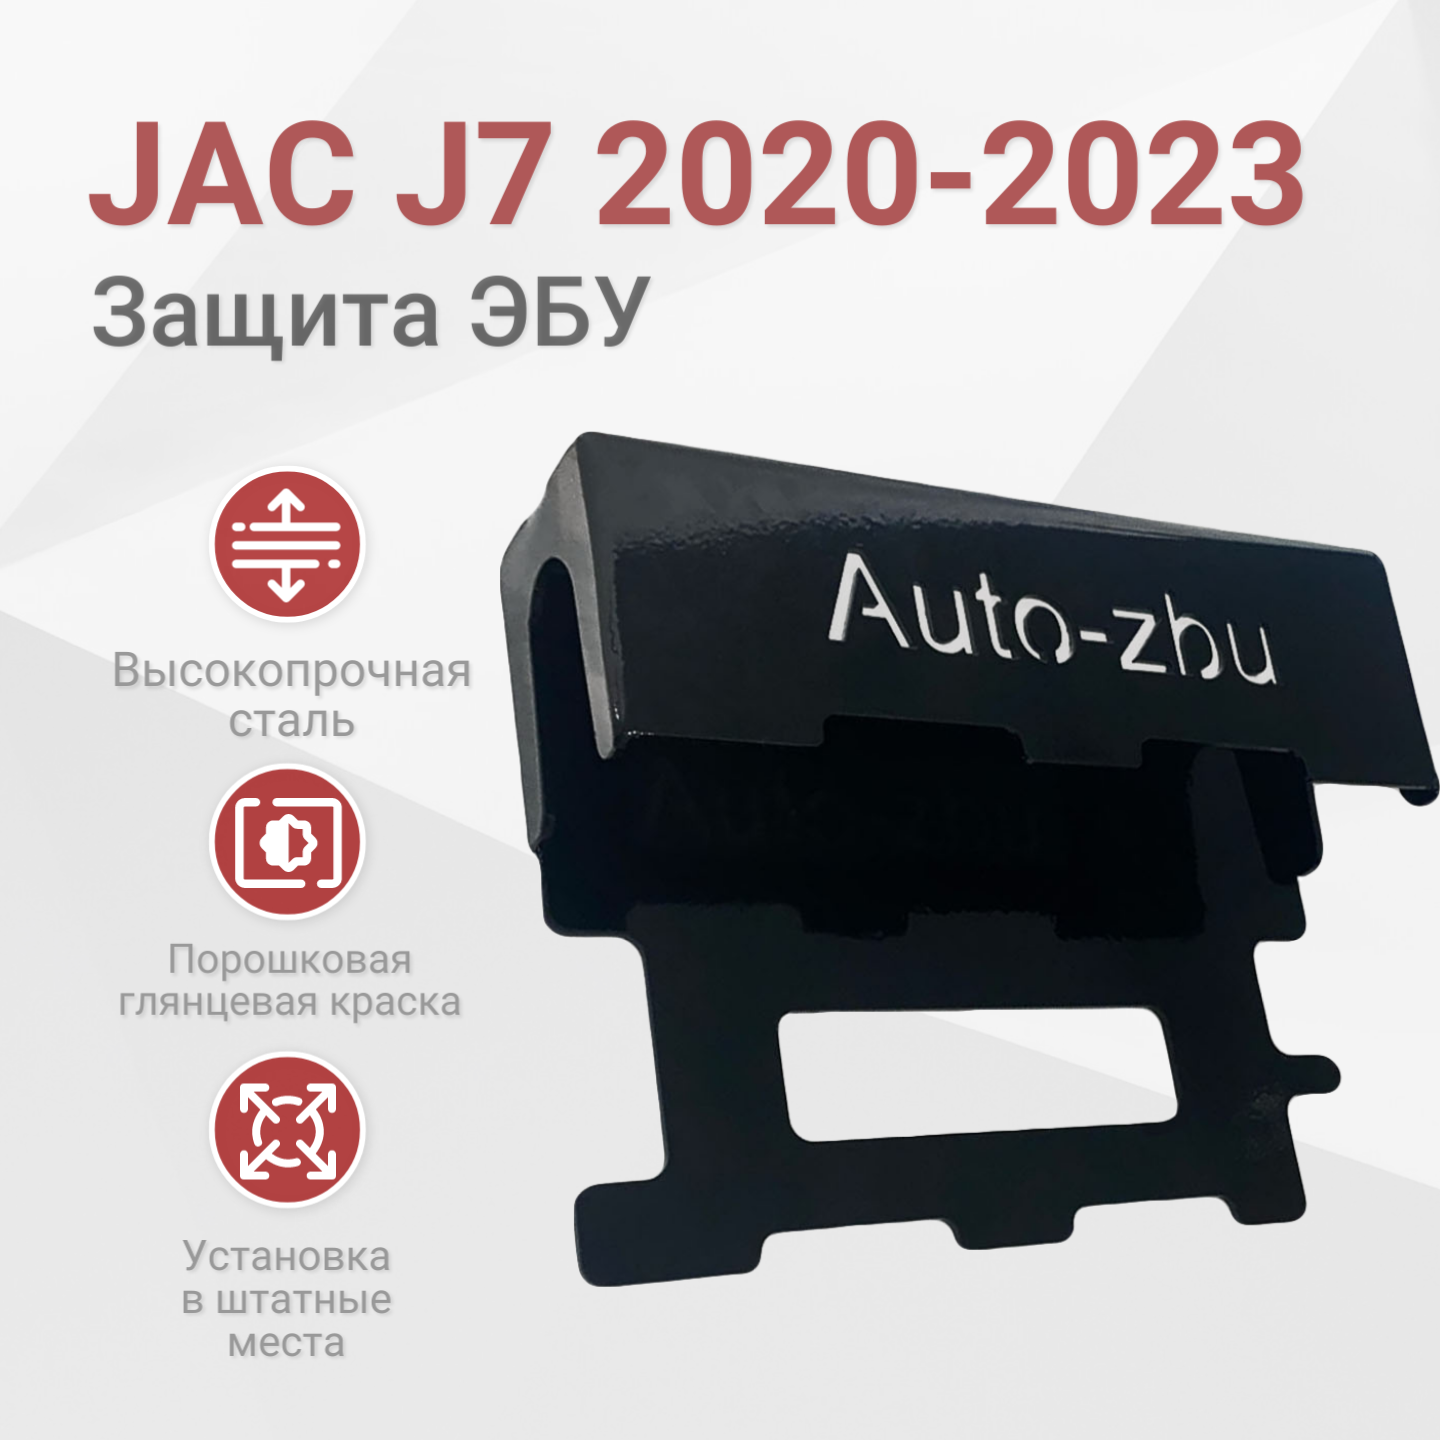 Сейф-защита ЭБУ JAC J7 2020-2023